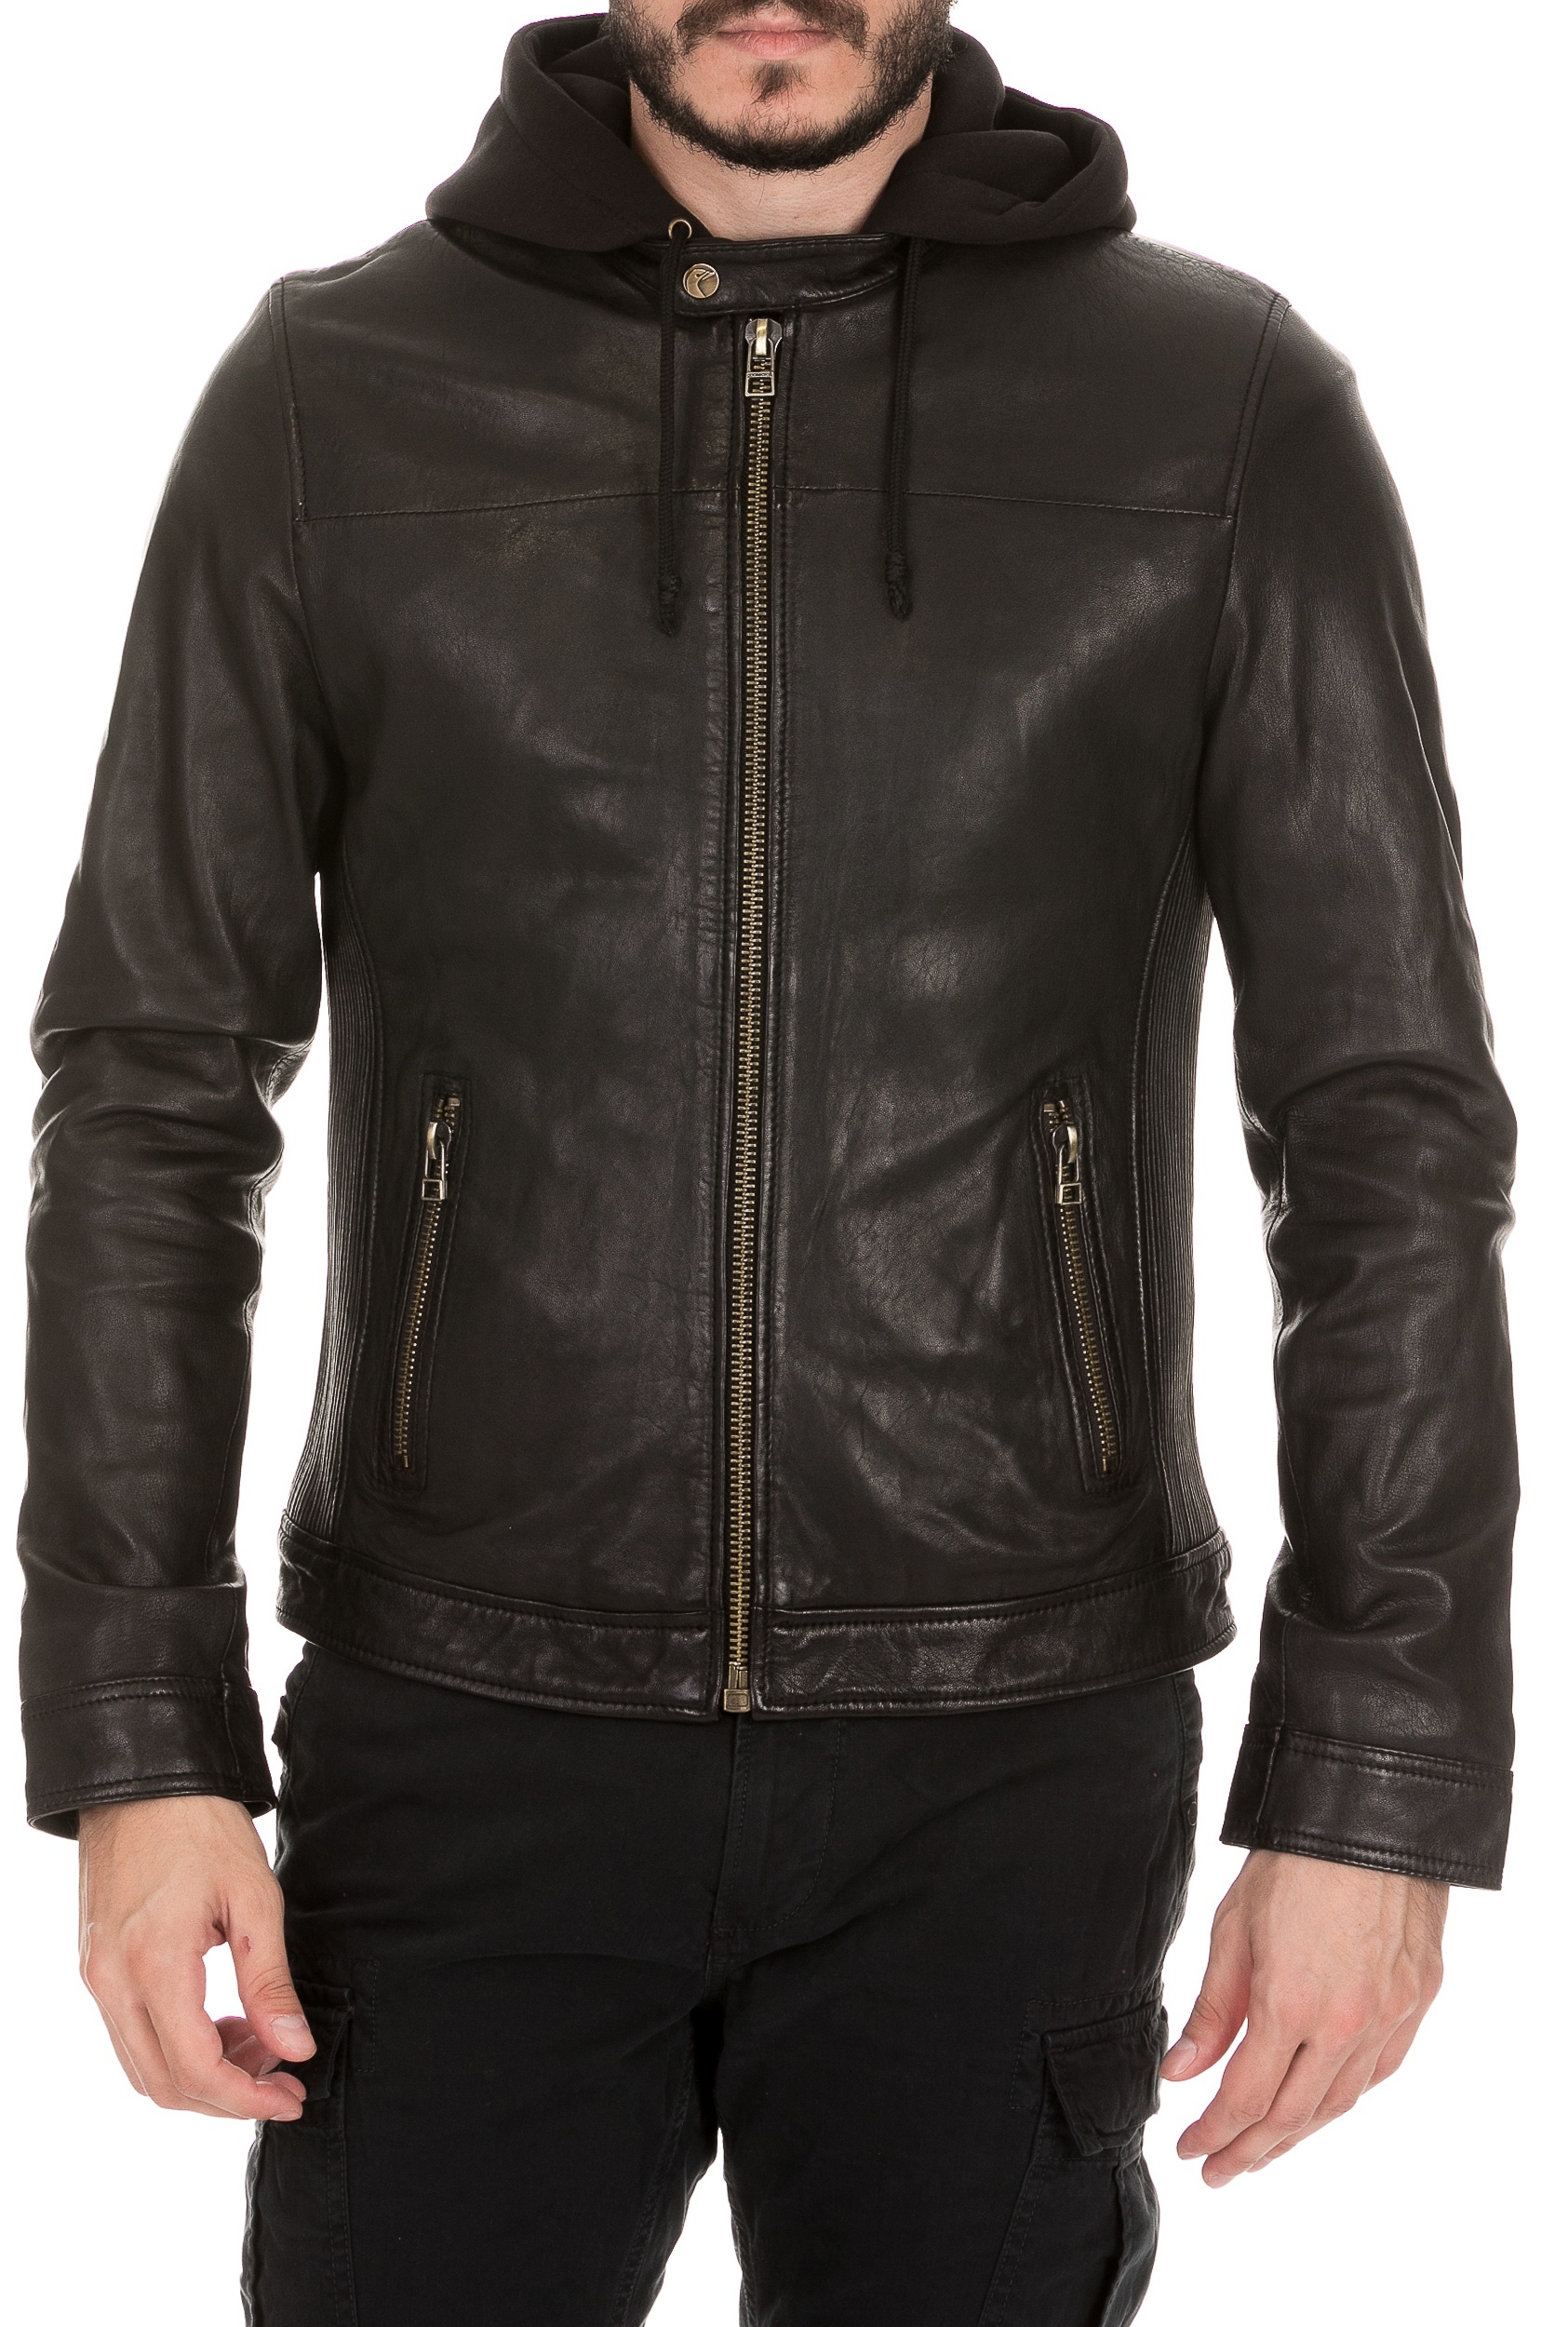 Ανδρικά/Ρούχα/Πανωφόρια/Τζάκετς GOOSECRAFT - Ανδρικό δερμάτινο jacket GOOSECRAFT BRADLEY BIKER μαύρο